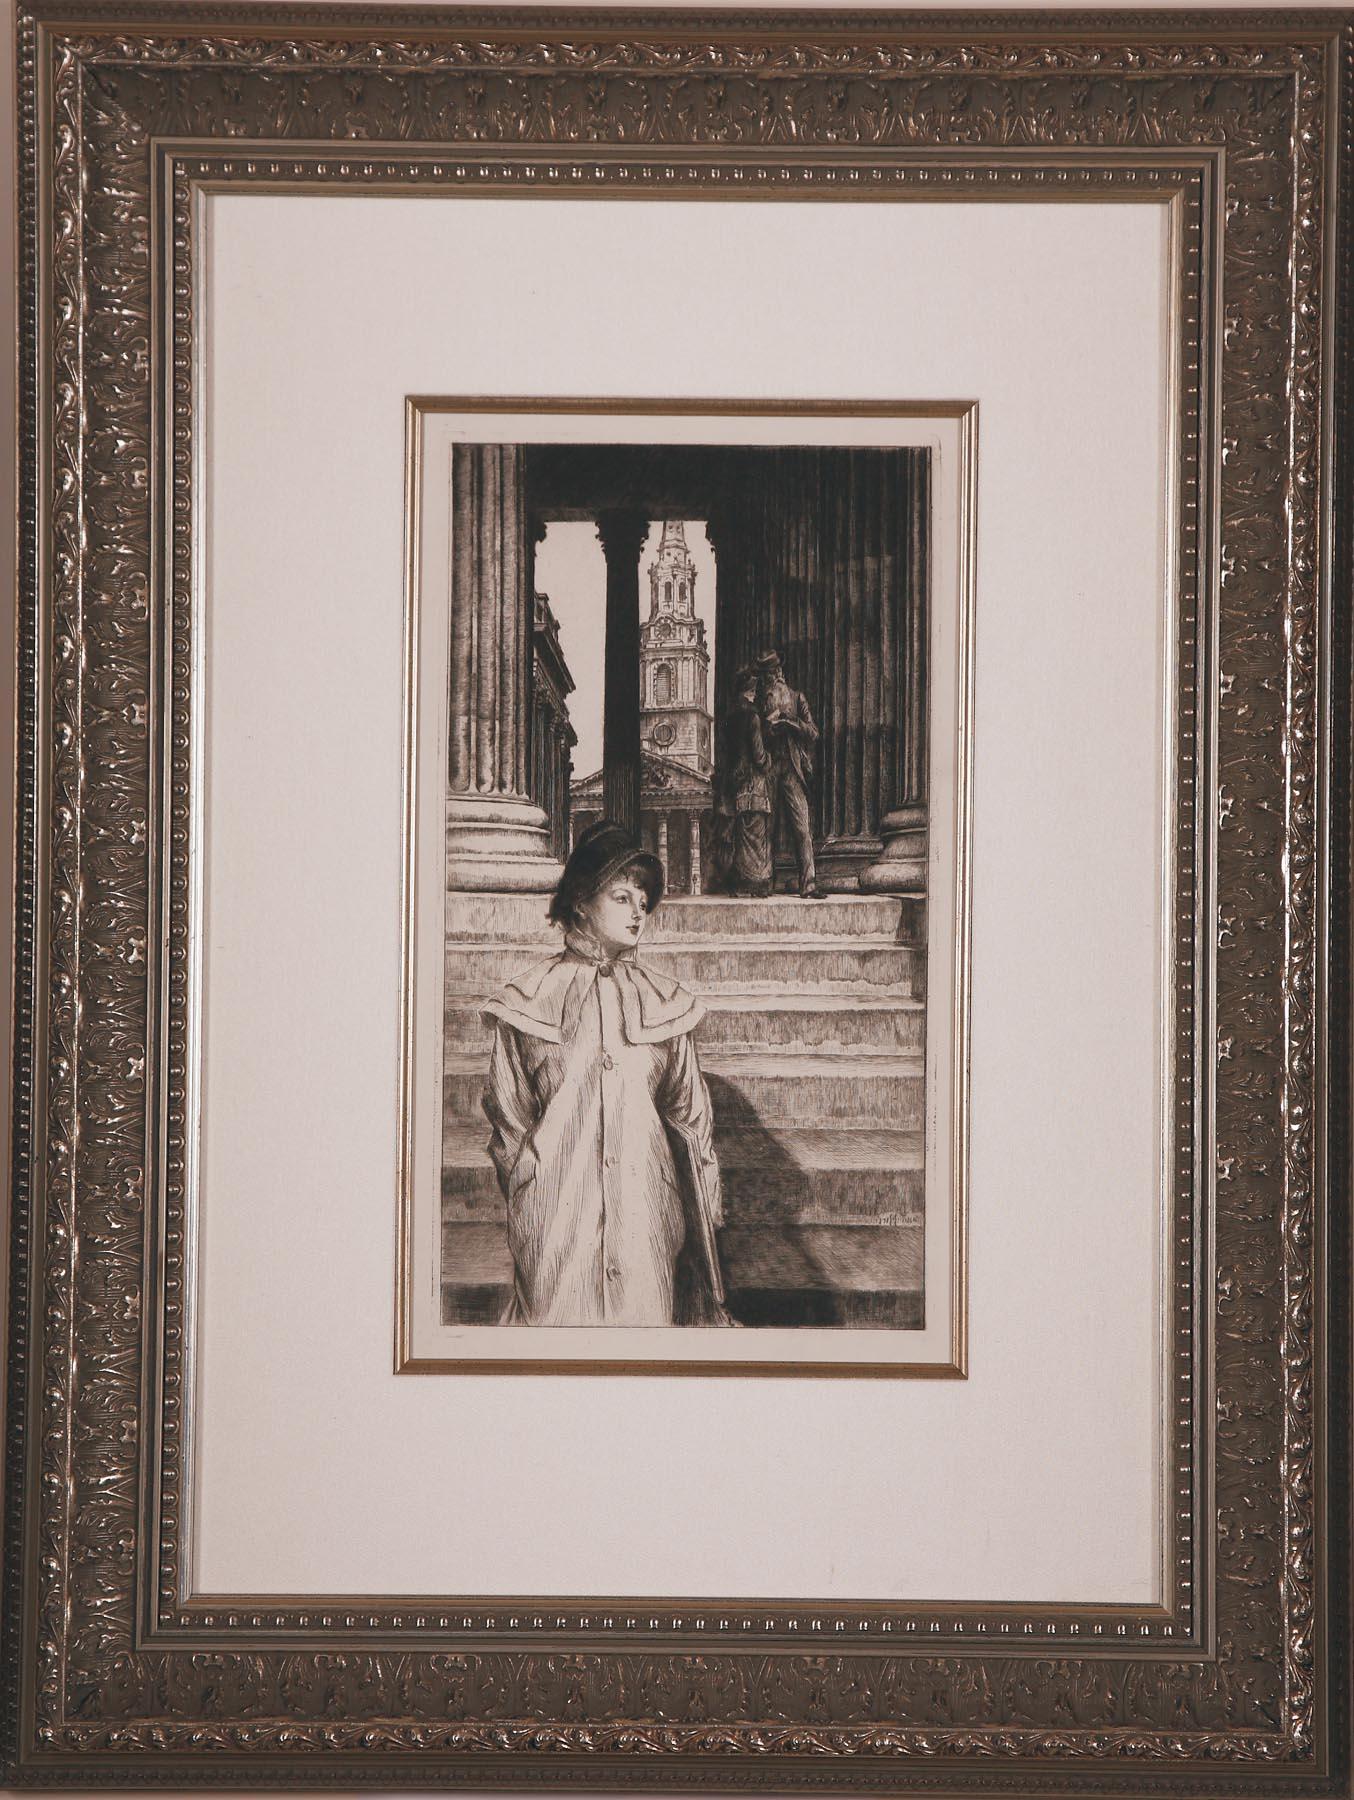 Le Portique de la Galerie Nationale a Londres by J.J. Tissot - Print by James Jacques Joseph Tissot